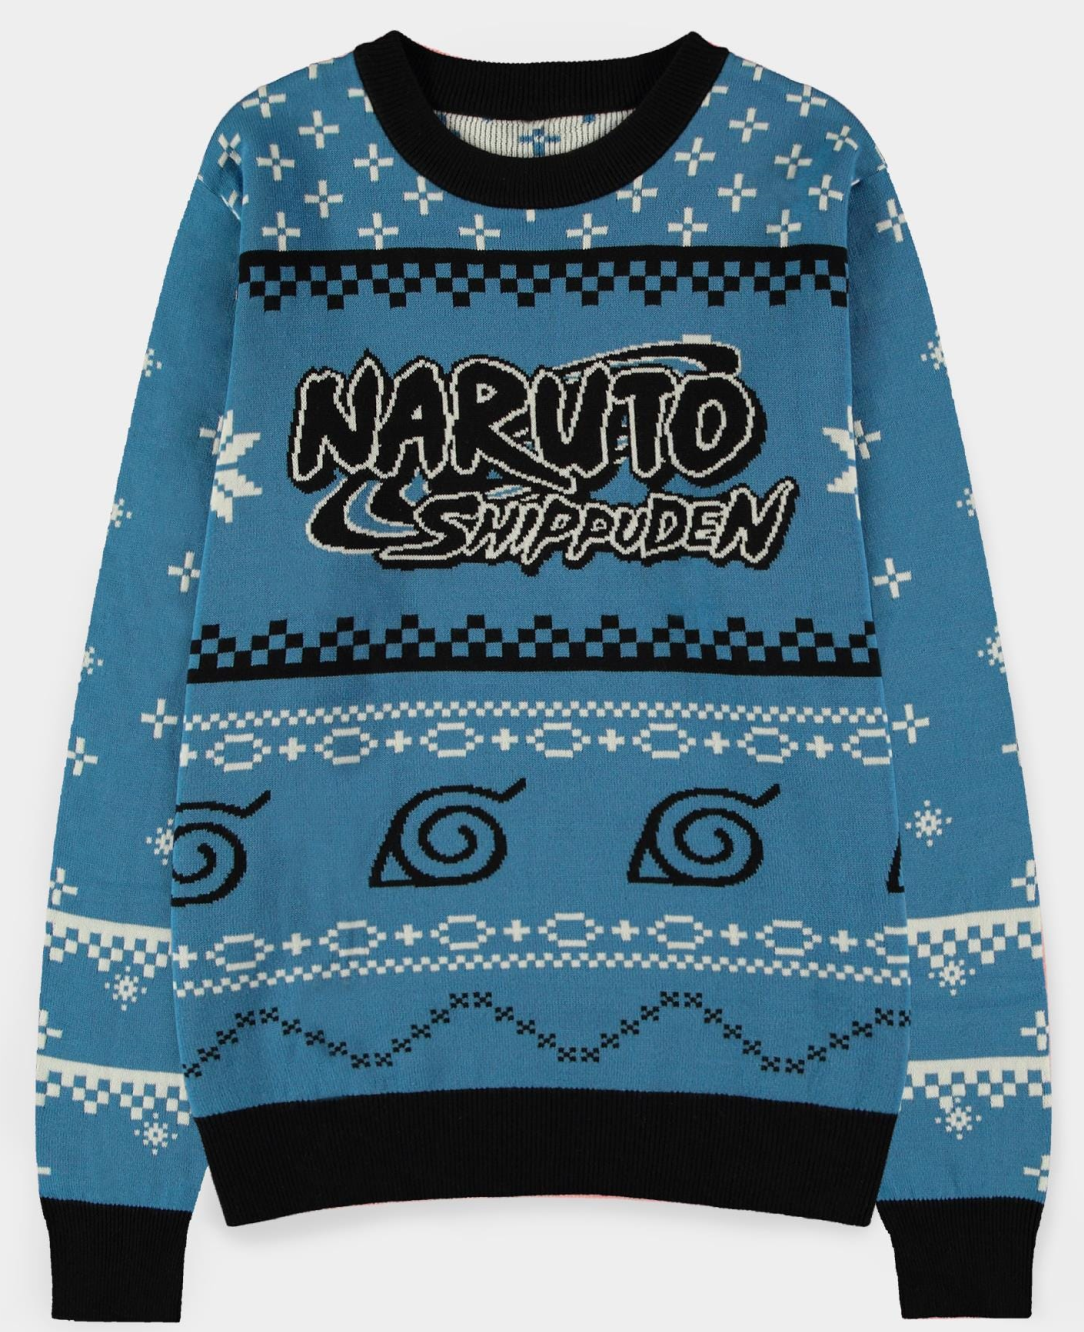 Abbigliamento Naruto Shippuden: Christmas Jumper Multicolor Maglione Tg. L NUOVO SIGILLATO EDIZIONE DEL SUBITO DISPONIBILE unisex